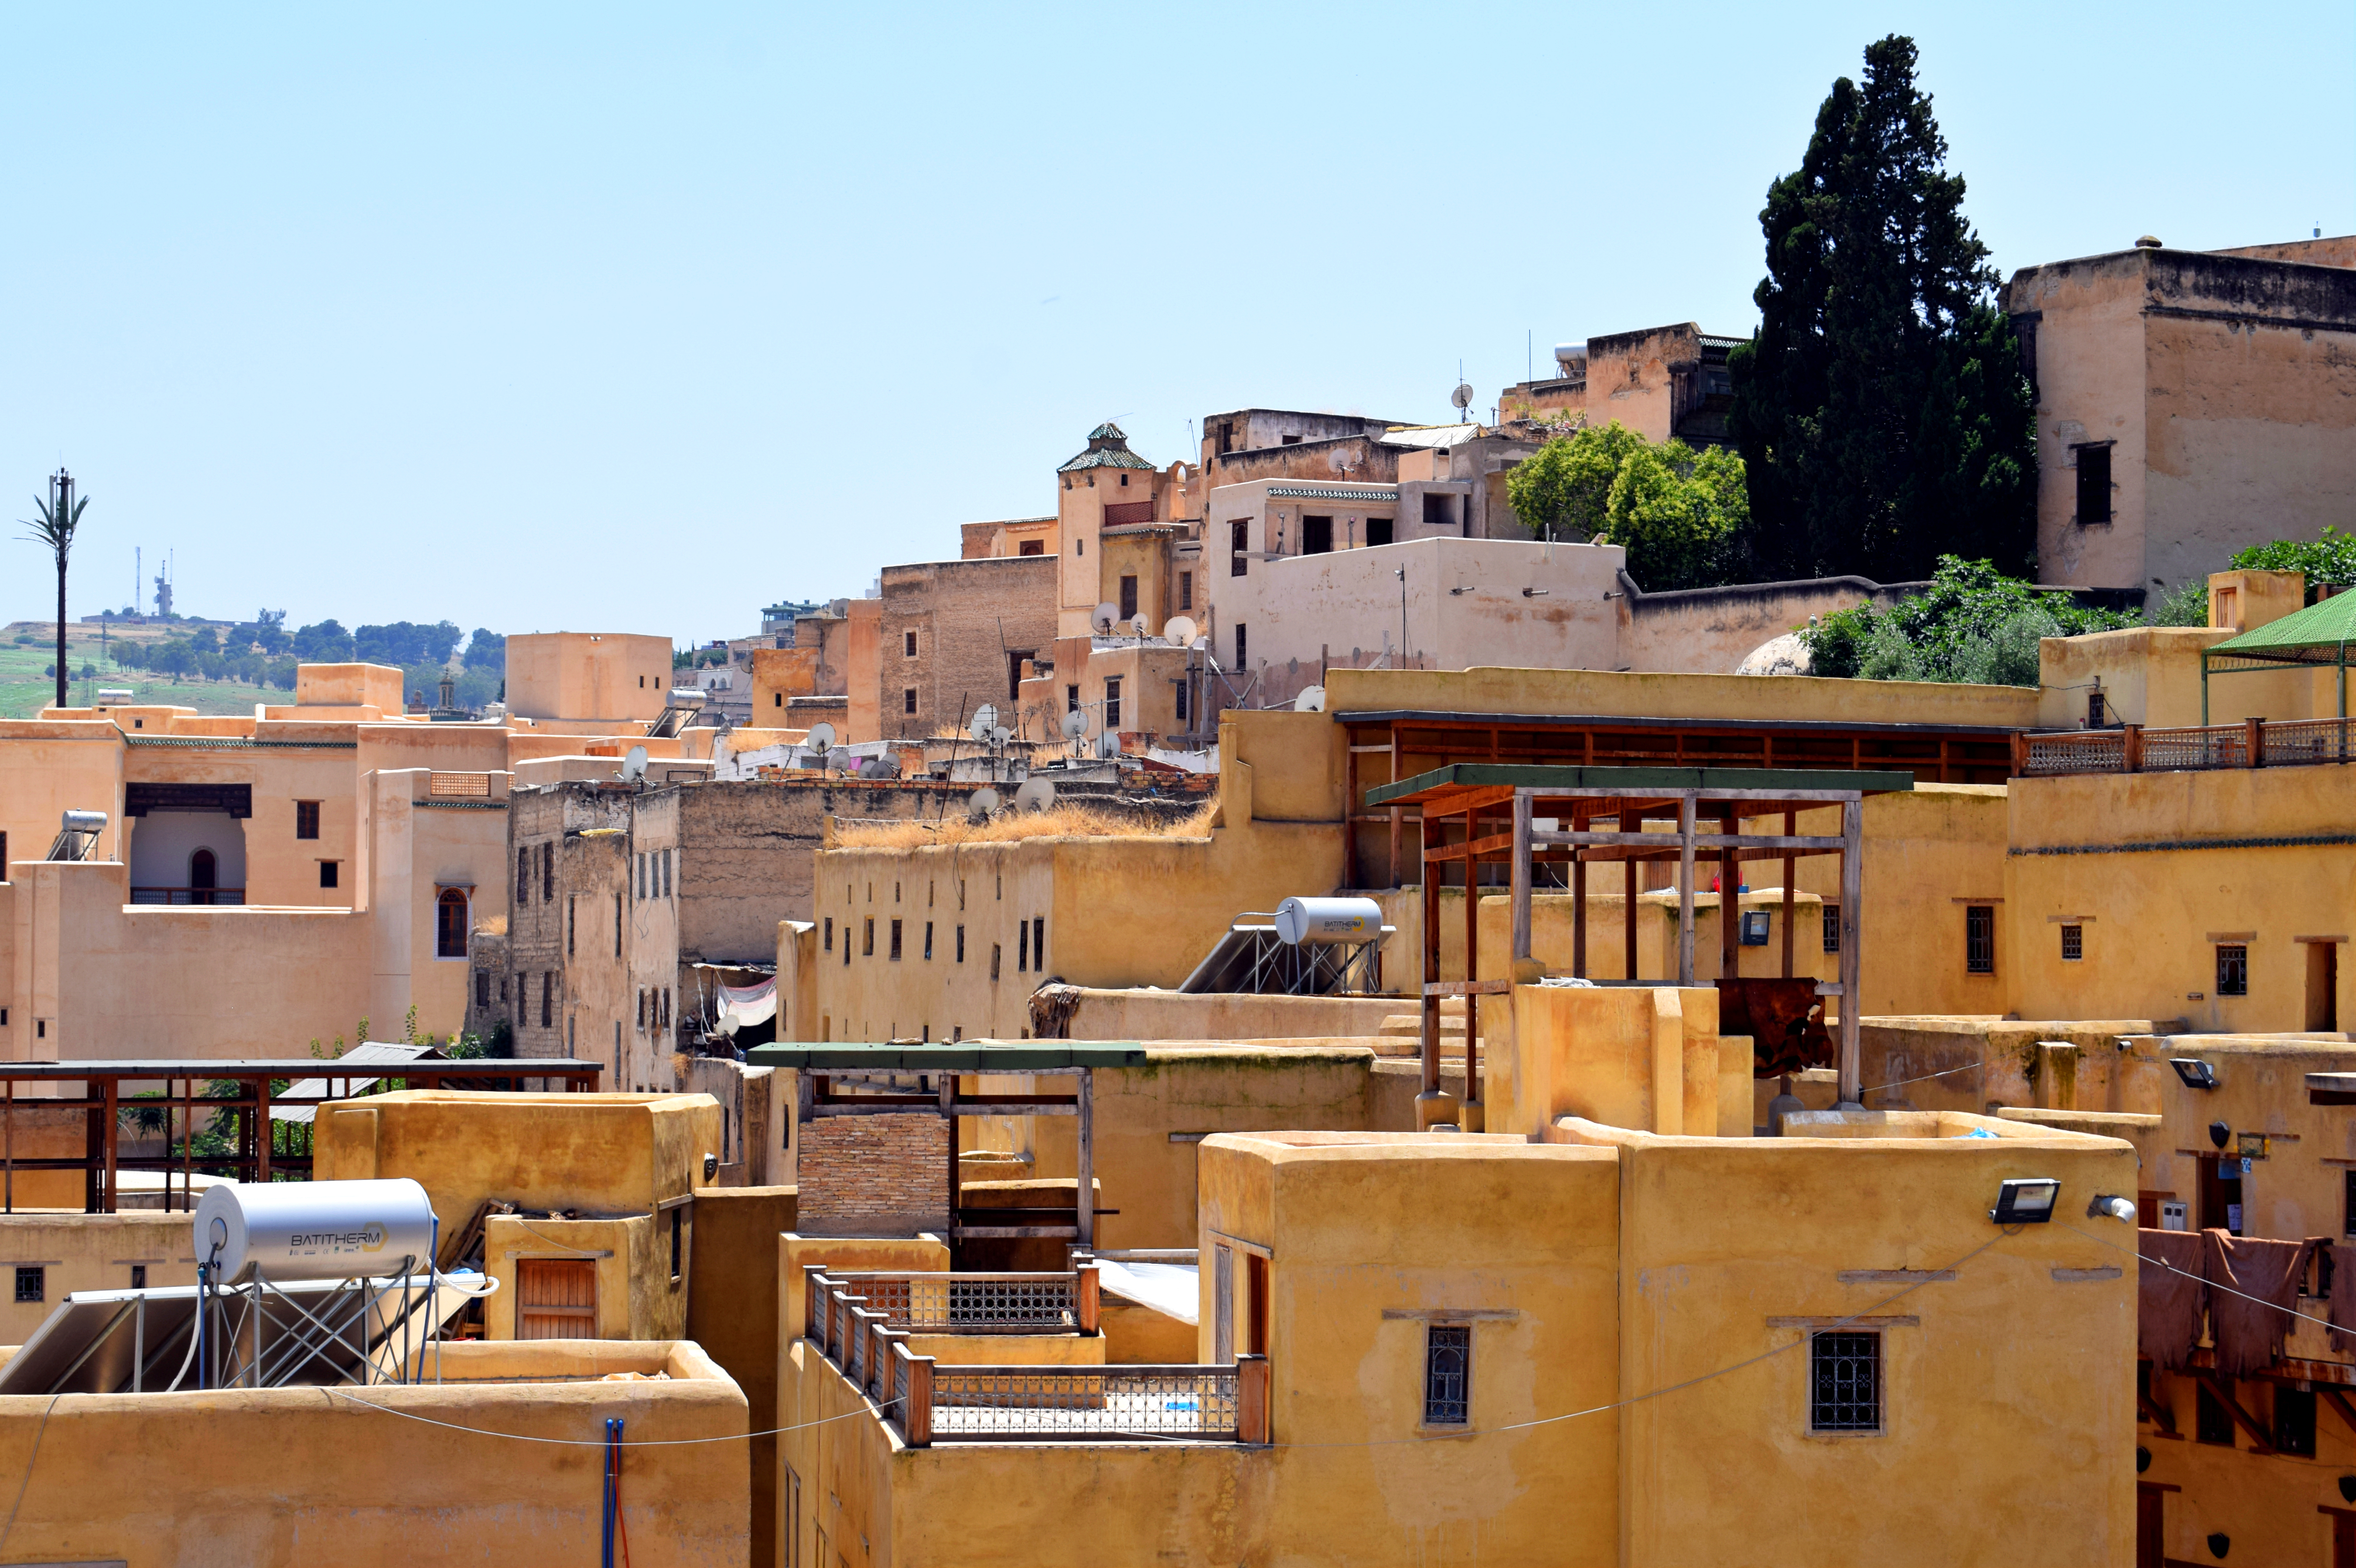 De ce nu m-aș mai întoarce în Maroc